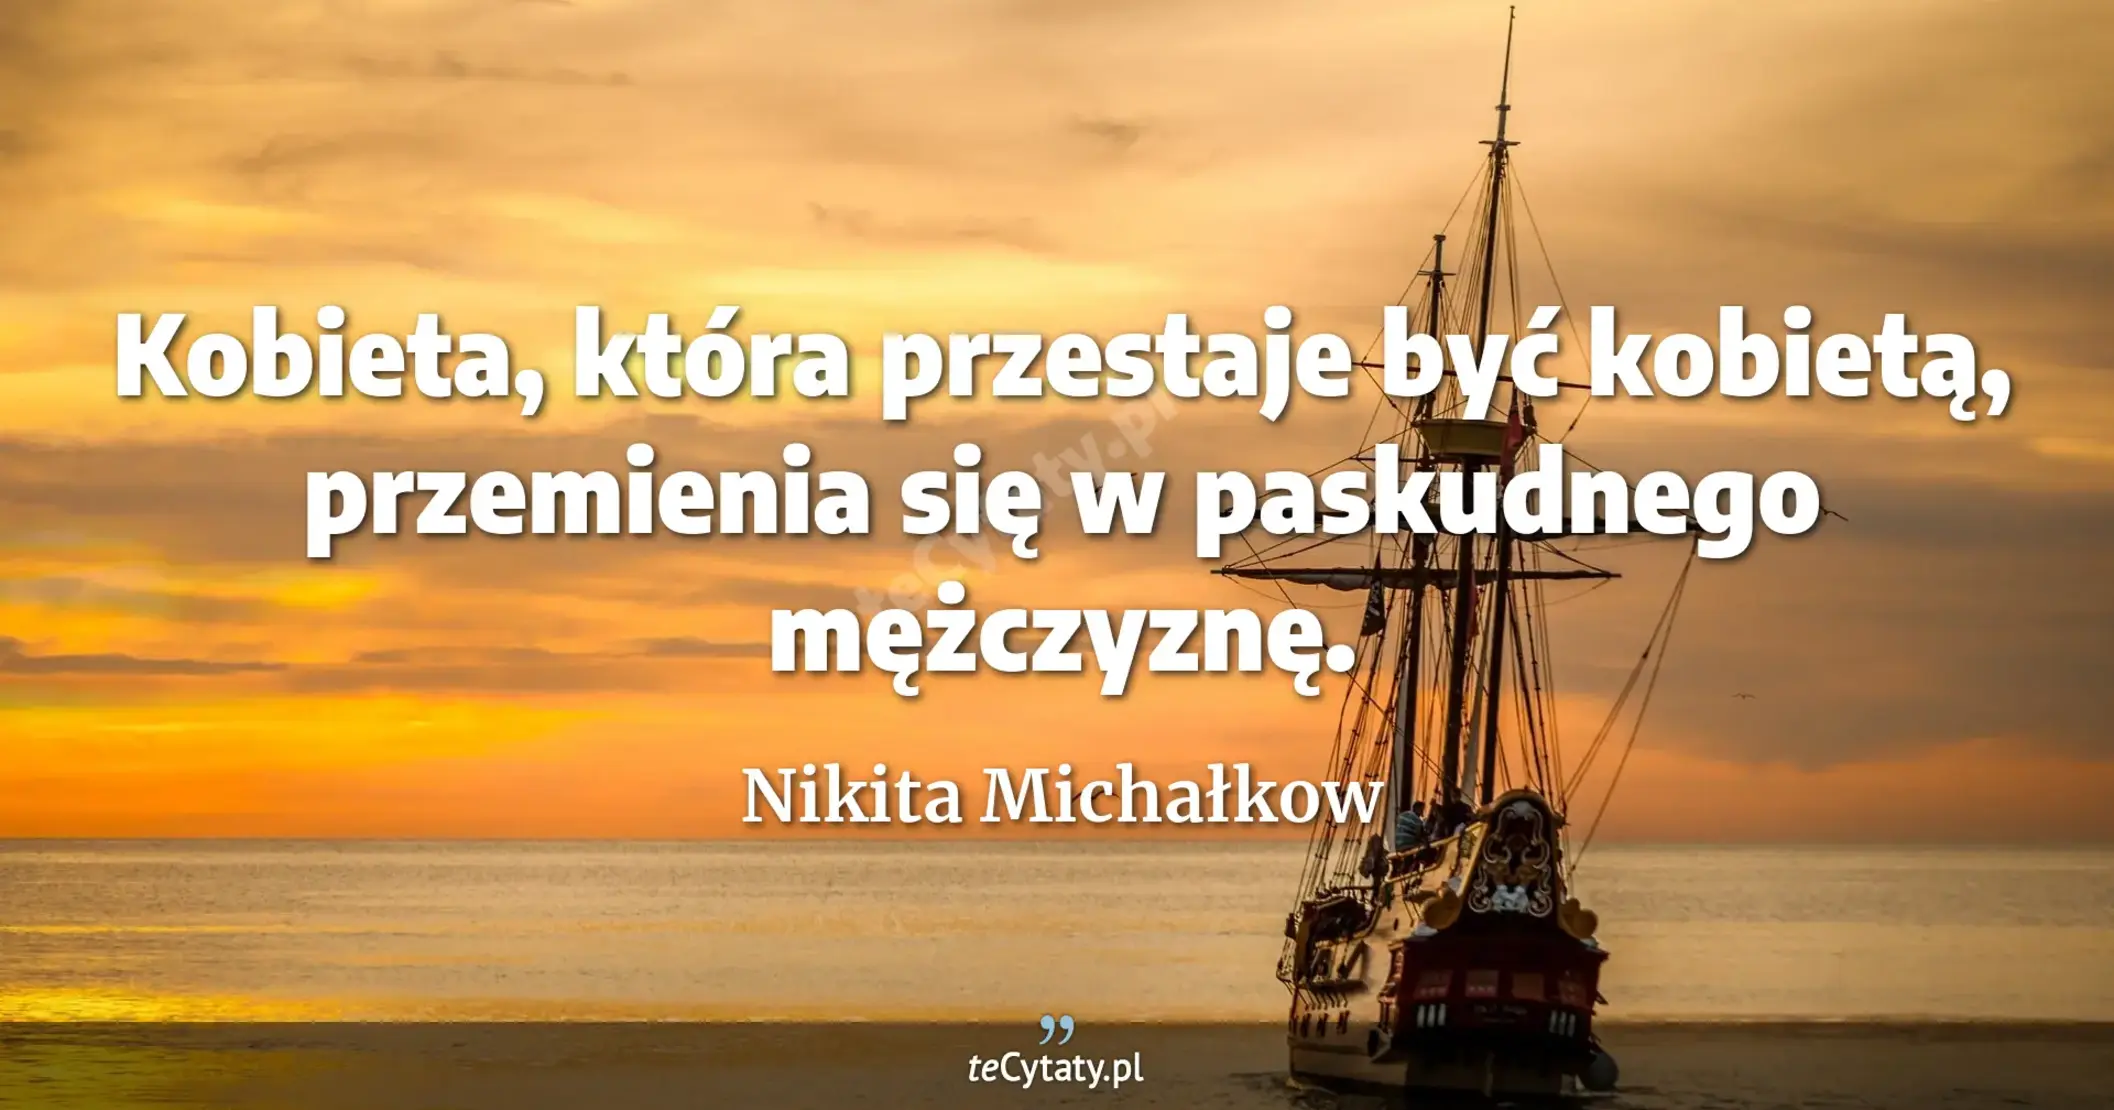 Kobieta, która przestaje być kobietą, przemienia się w paskudnego mężczyznę. - Nikita Michałkow